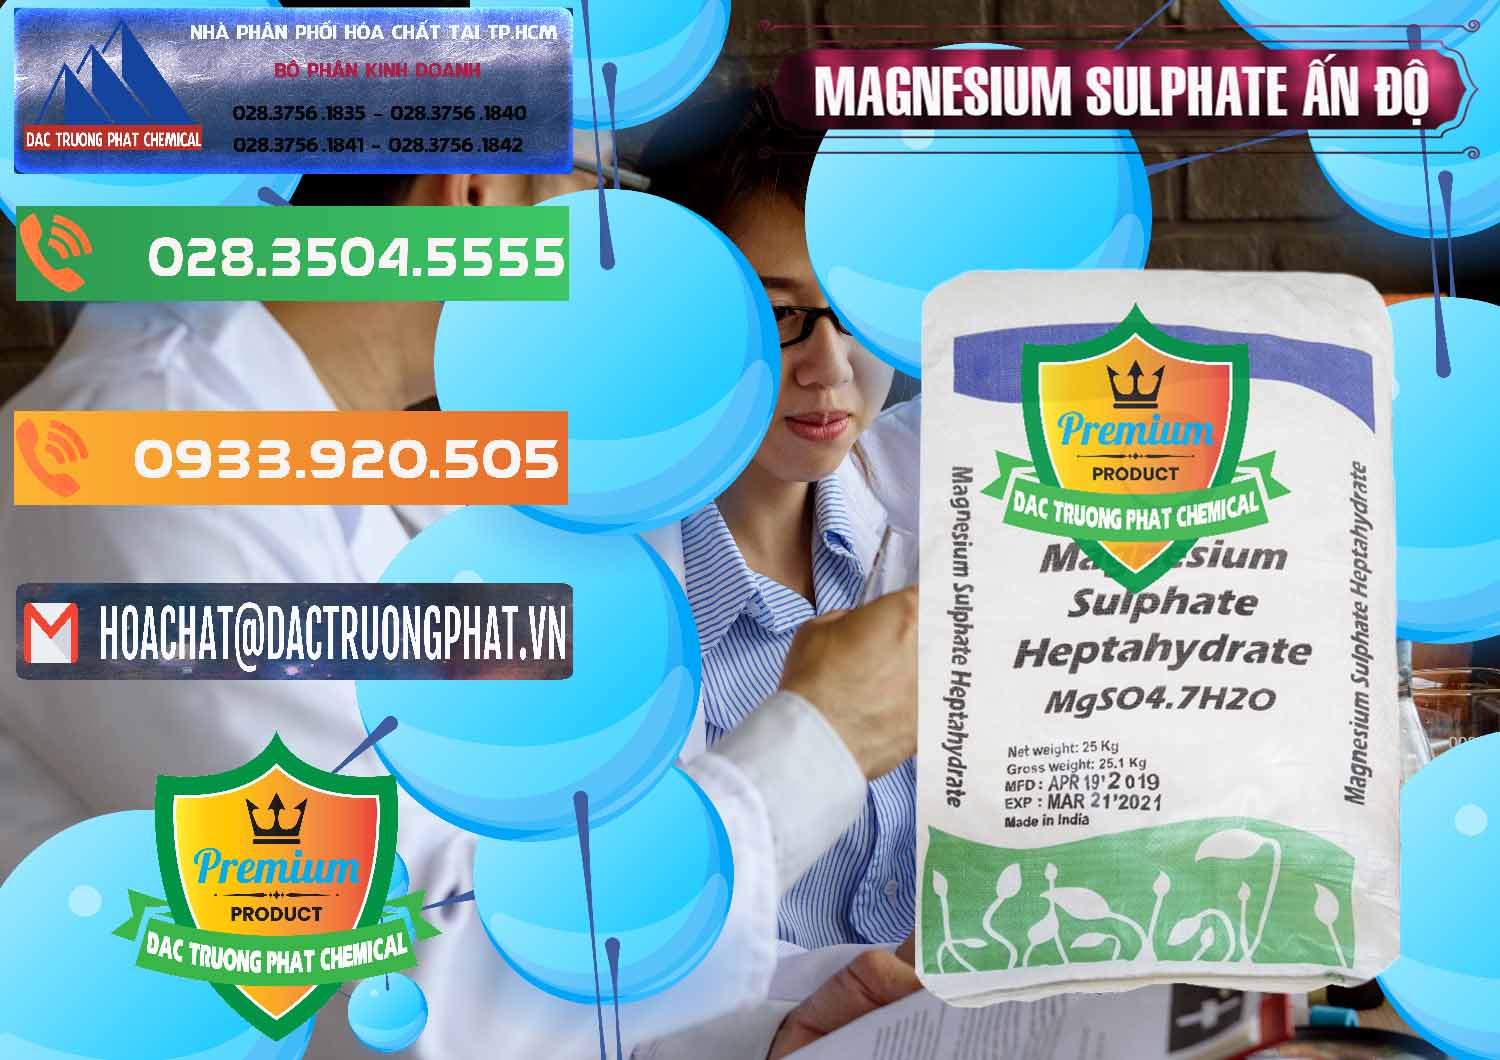 Nơi chuyên cung cấp ( bán ) MGSO4.7H2O – Magnesium Sulphate Heptahydrate Ấn Độ India - 0362 - Nhà phân phối và cung ứng hóa chất tại TP.HCM - hoachatxulynuoc.com.vn